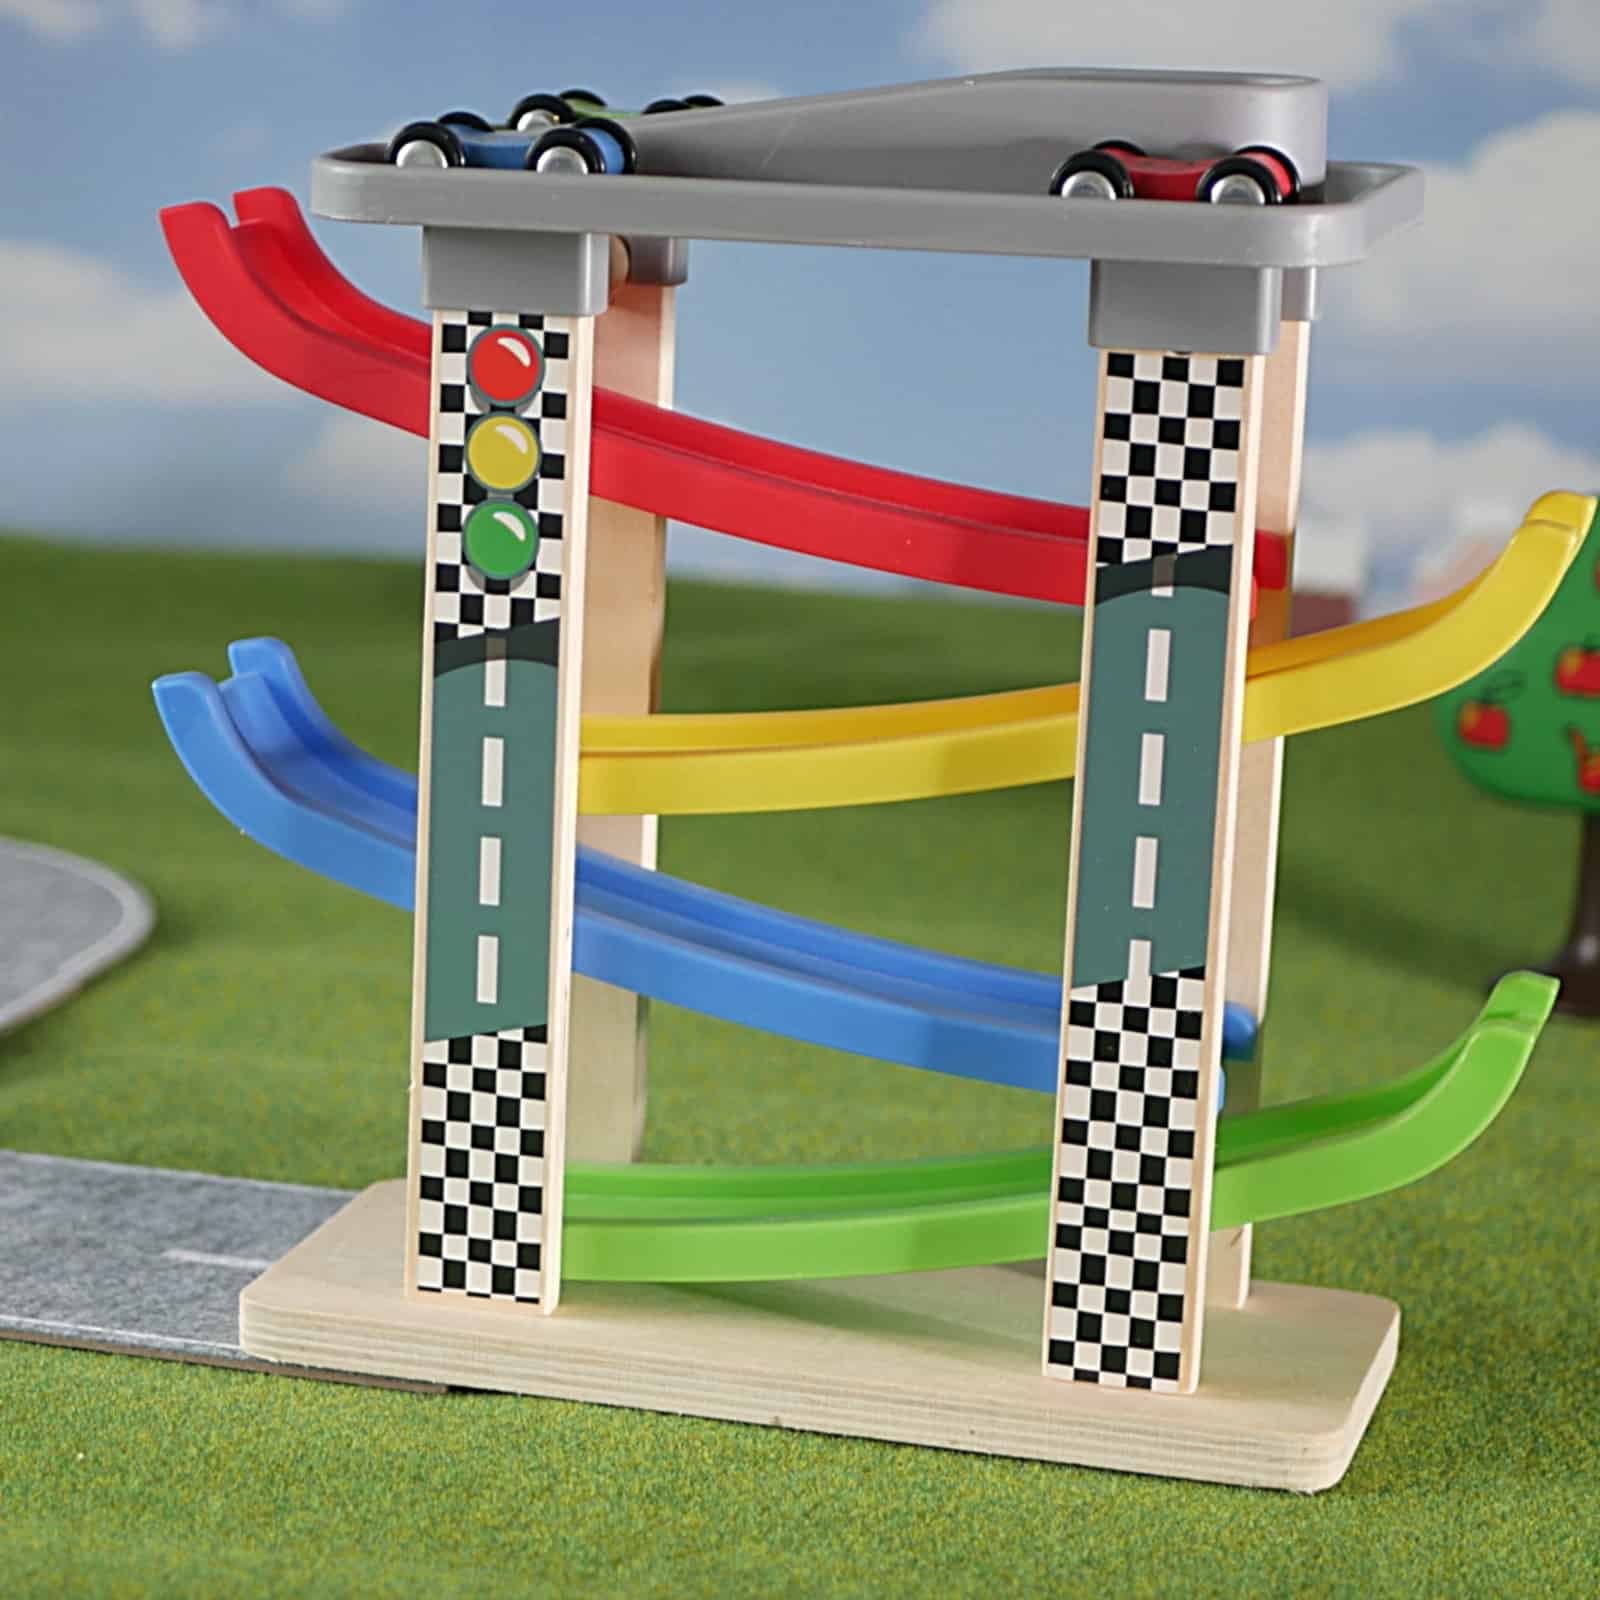 Beste speelgoed garage voor dreumes: Top Bright raceautobaan